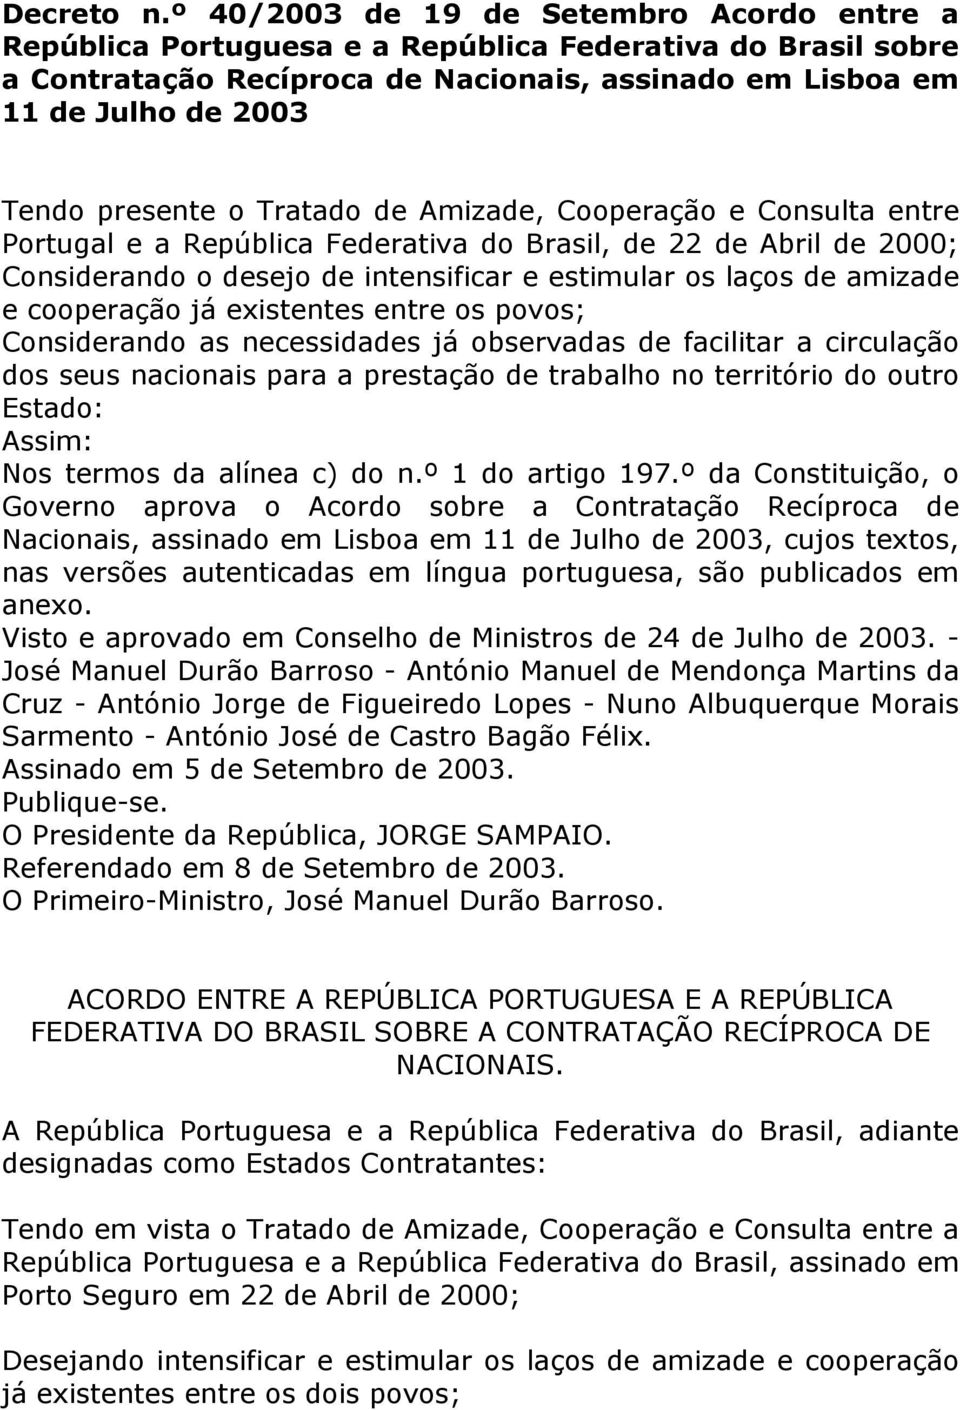 o Tratado de Amizade, Cooperação e Consulta entre Portugal e a República Federativa do Brasil, de 22 de Abril de 2000; Considerando o desejo de intensificar e estimular os laços de amizade e